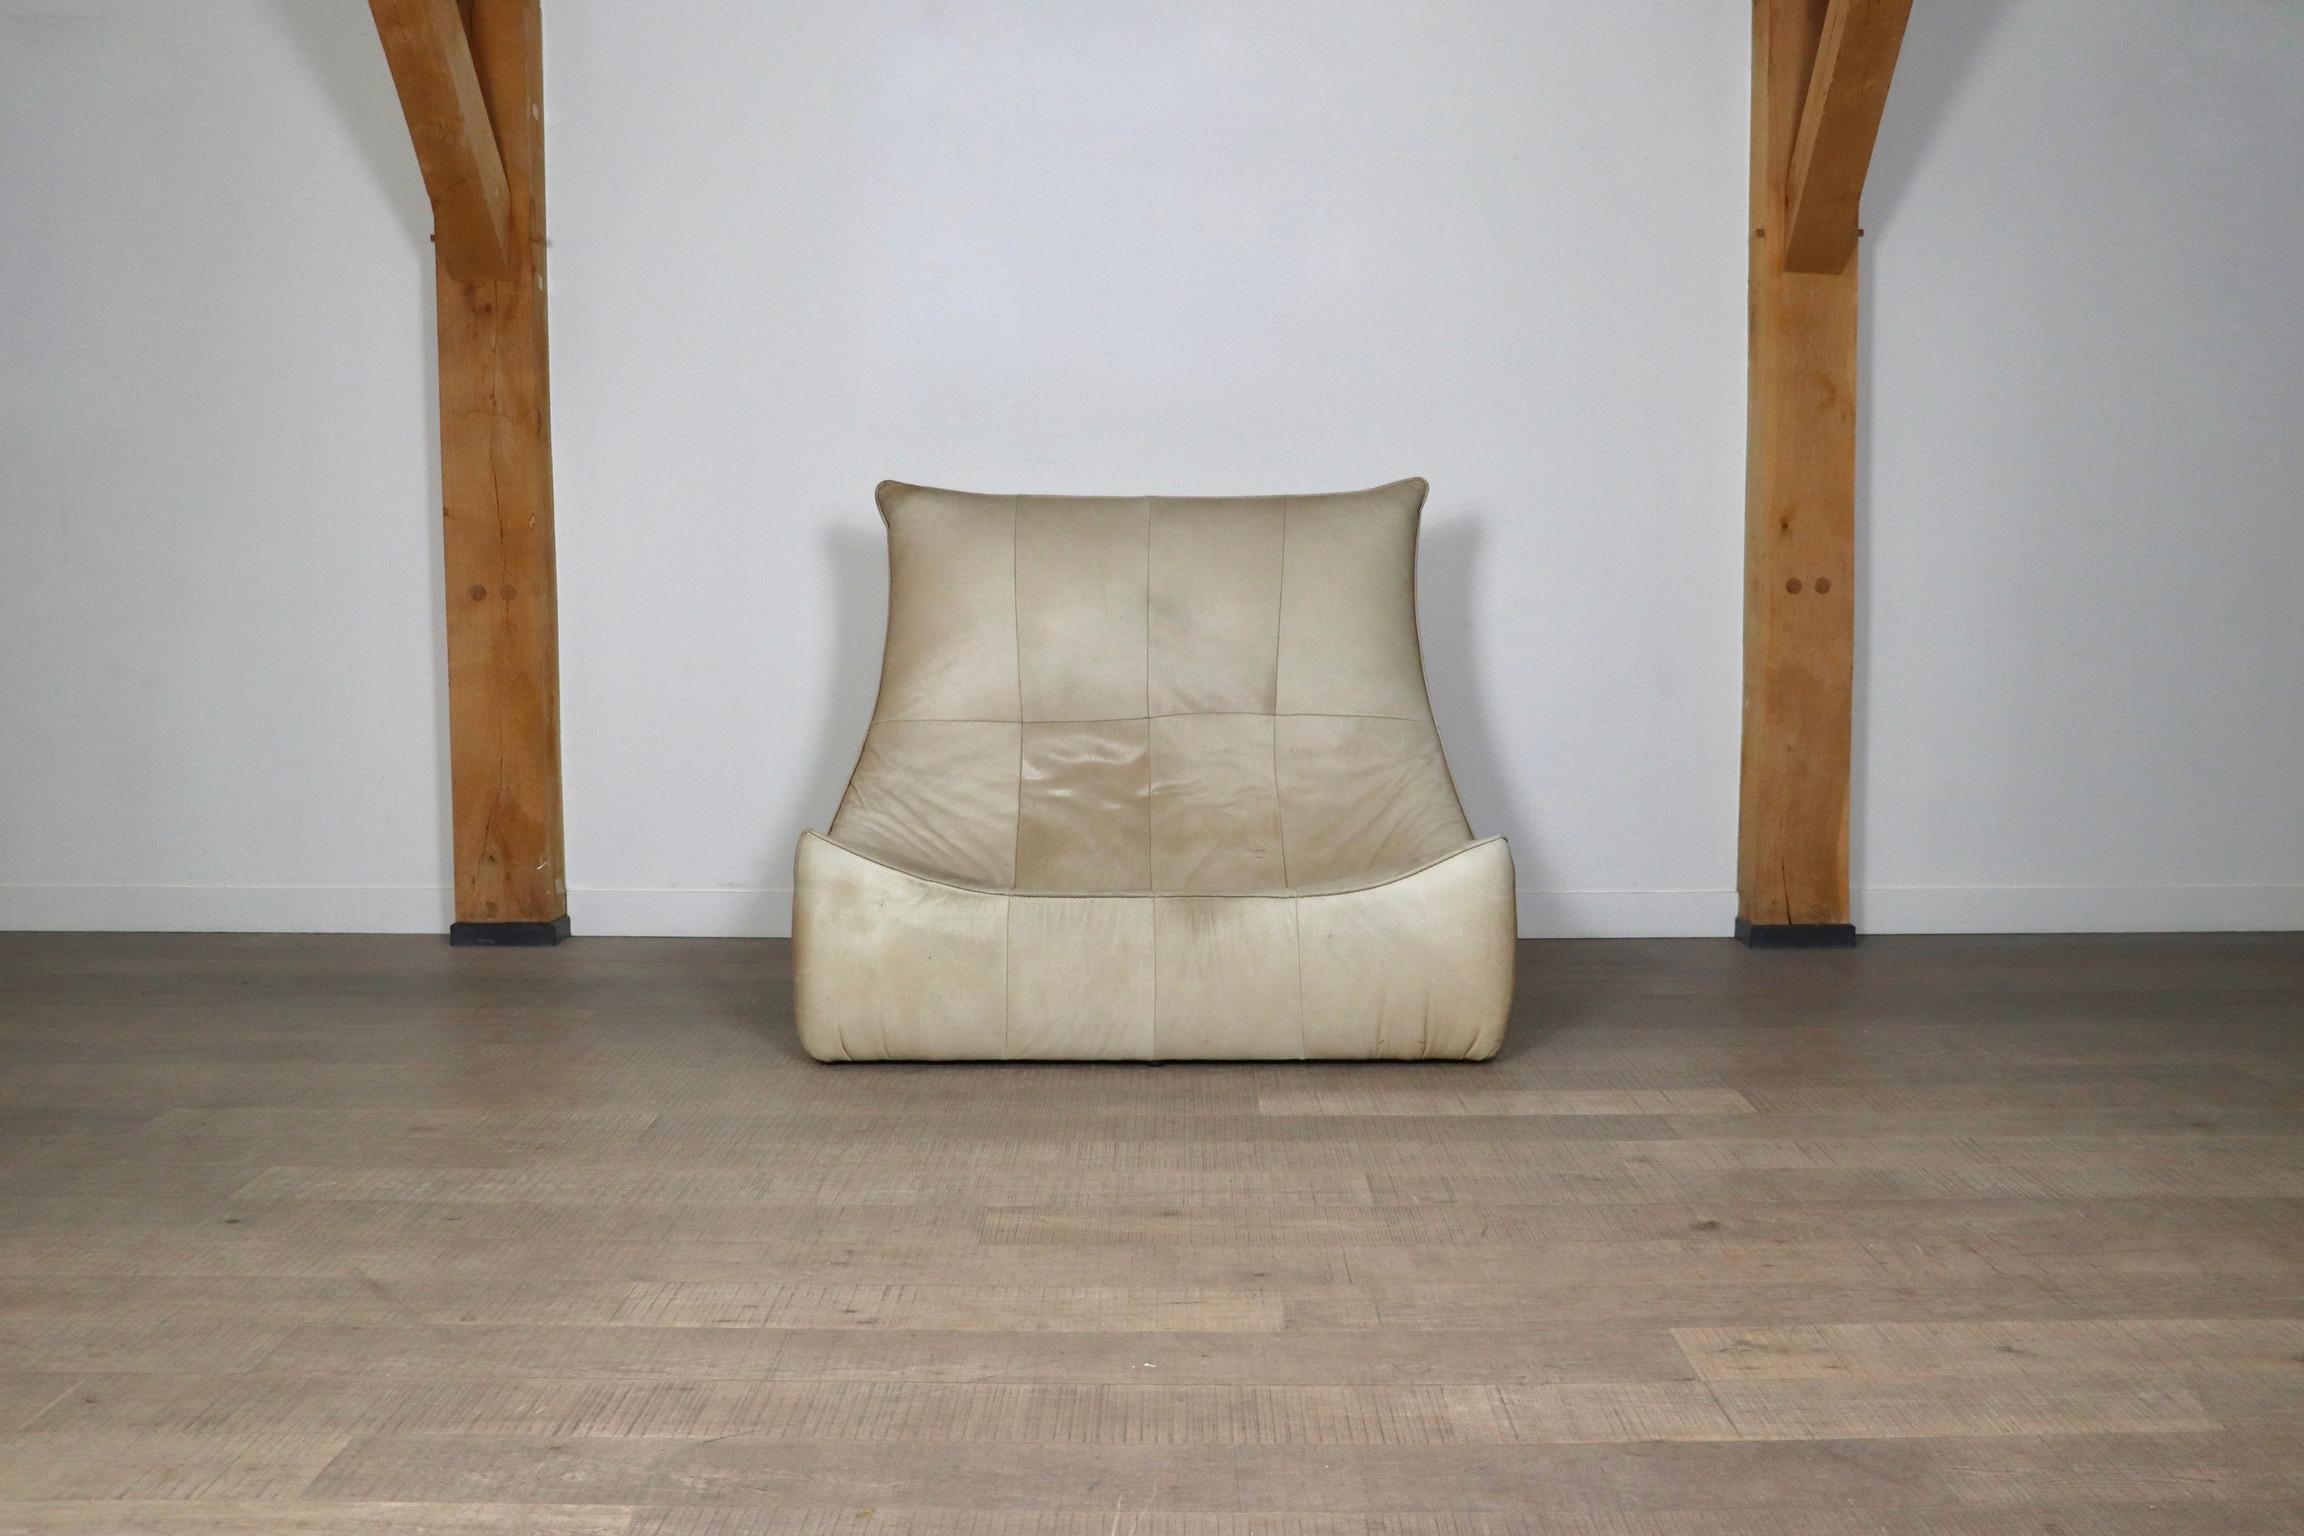 Wunderschönes Zweisitzer-Sofa 'The Rock' aus beigem Leder von Gerard van den Berg für Montis aus den 1970er Jahren. Dieses Sofa ist auch unter dem Namen 